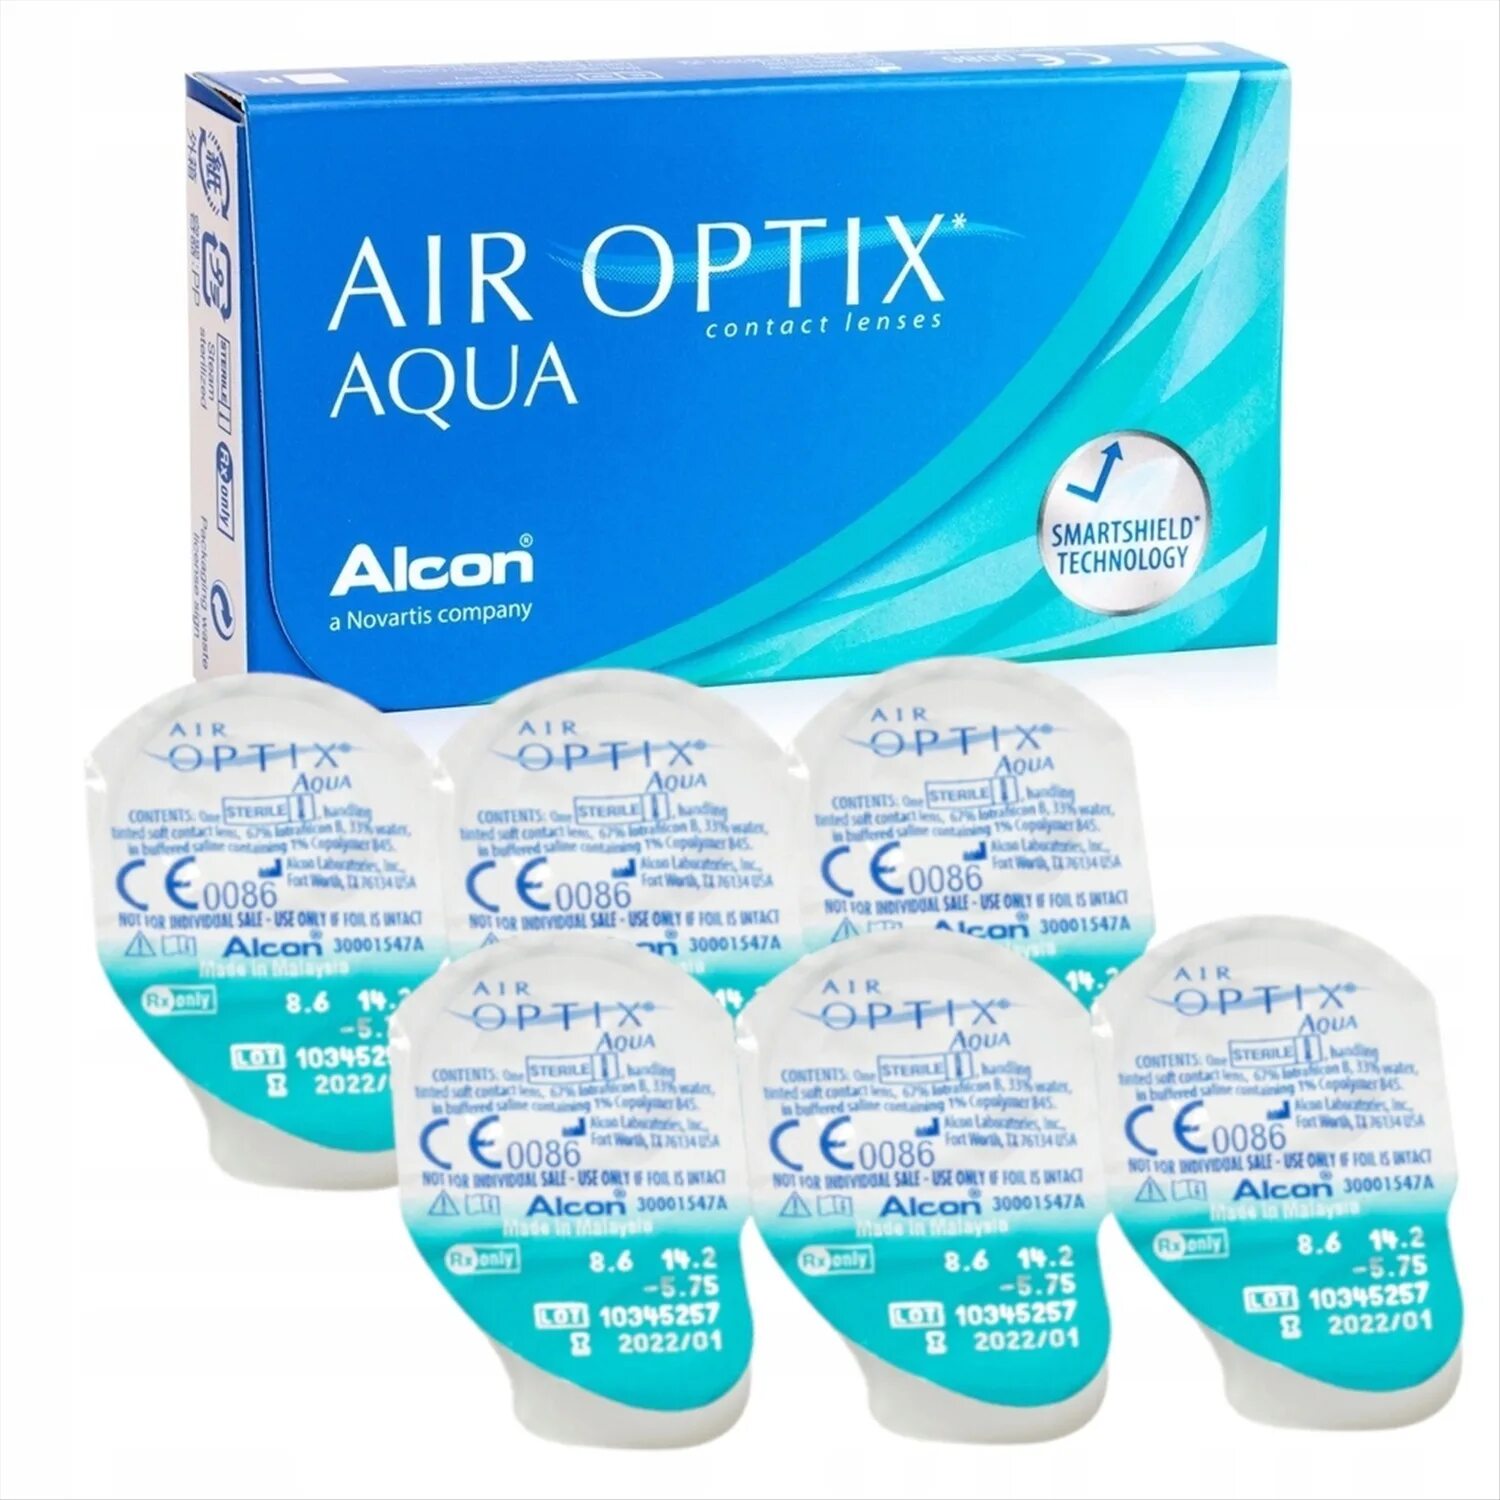 Air Optix 6 линз. Air Optix Aqua (3 линзы). Линзы Alcon Air Optix Aqua. Alcon контактные линзы "Air Optix Aqua", 6 шт., -2.25 / 8.6/ ежемесячные.